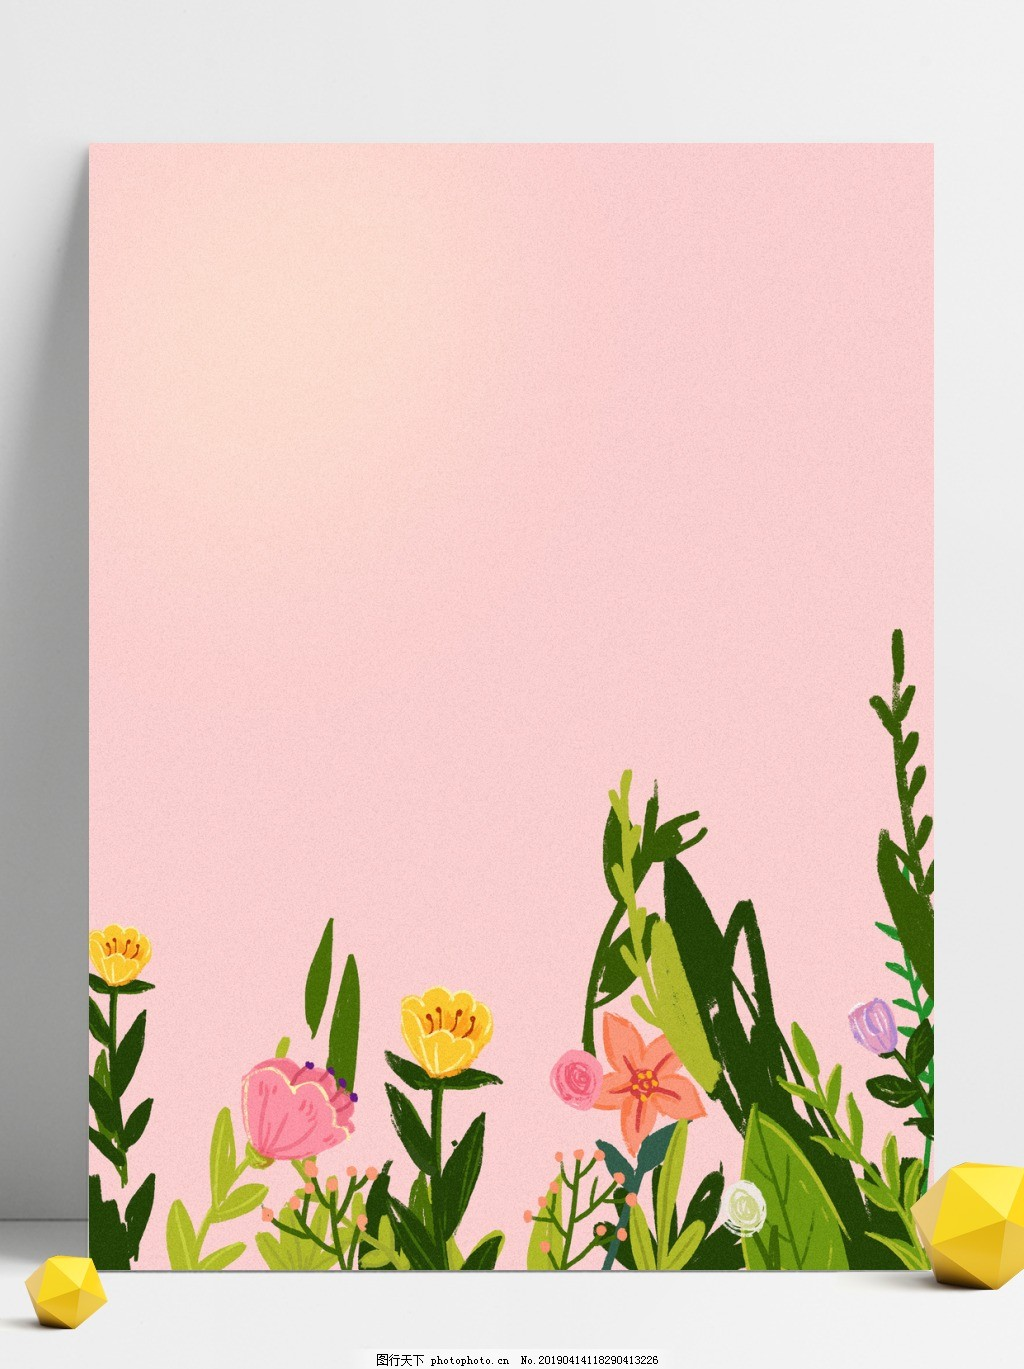 ‘~粉色温馨花束520节日表白背景平面创作图片_广告背景_底纹边框-  ~’ 的图片